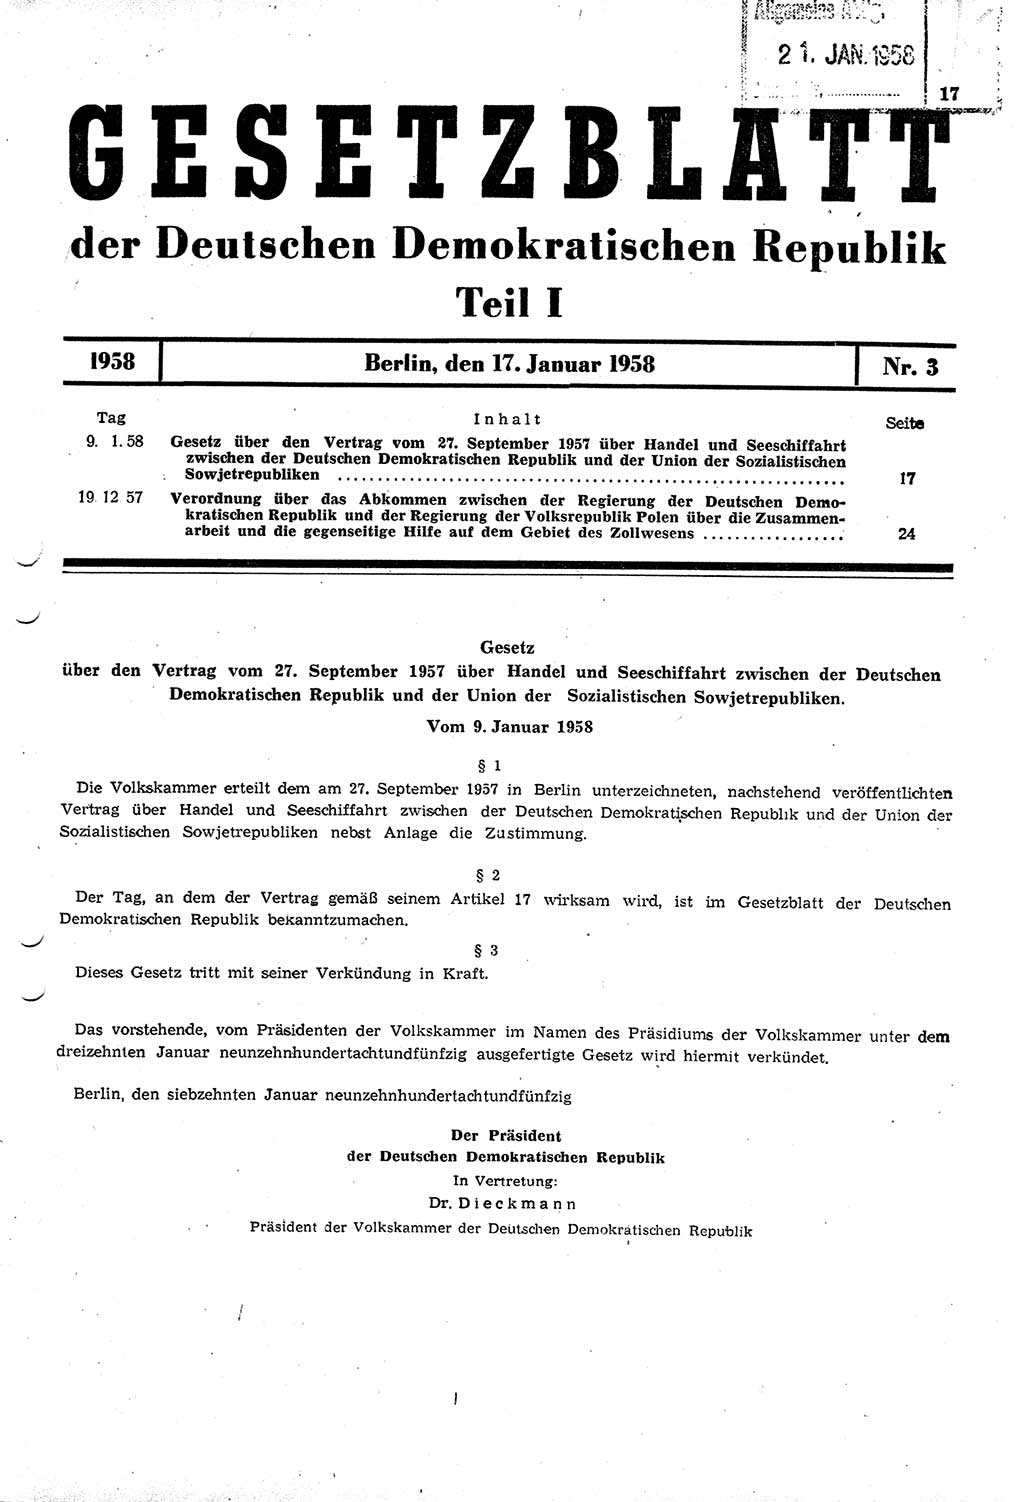 Gesetzblatt (GBl.) der Deutschen Demokratischen Republik (DDR) Teil Ⅰ 1958, Seite 17 (GBl. DDR Ⅰ 1958, S. 17)